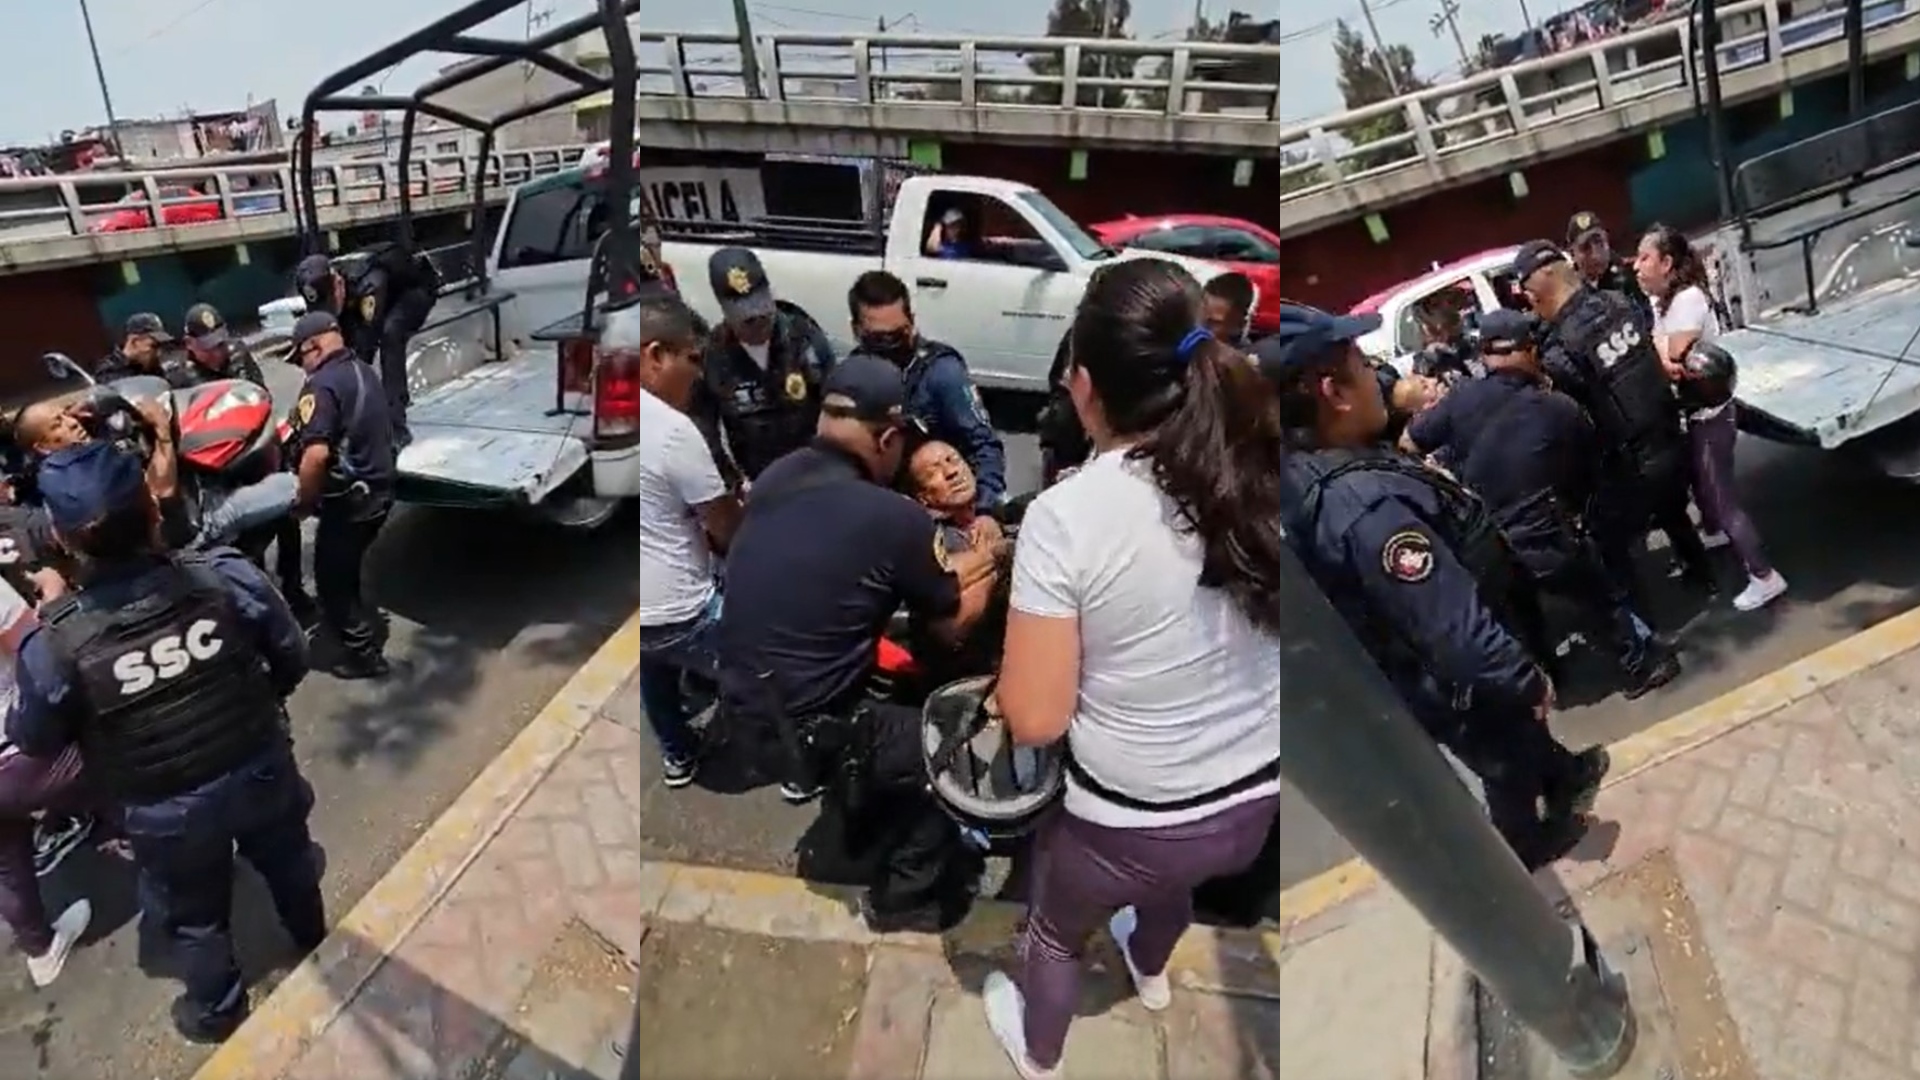 Una decena de policías sometieron a un solo hombre que viajaba en una motoneta; internautas acusan abuso policial